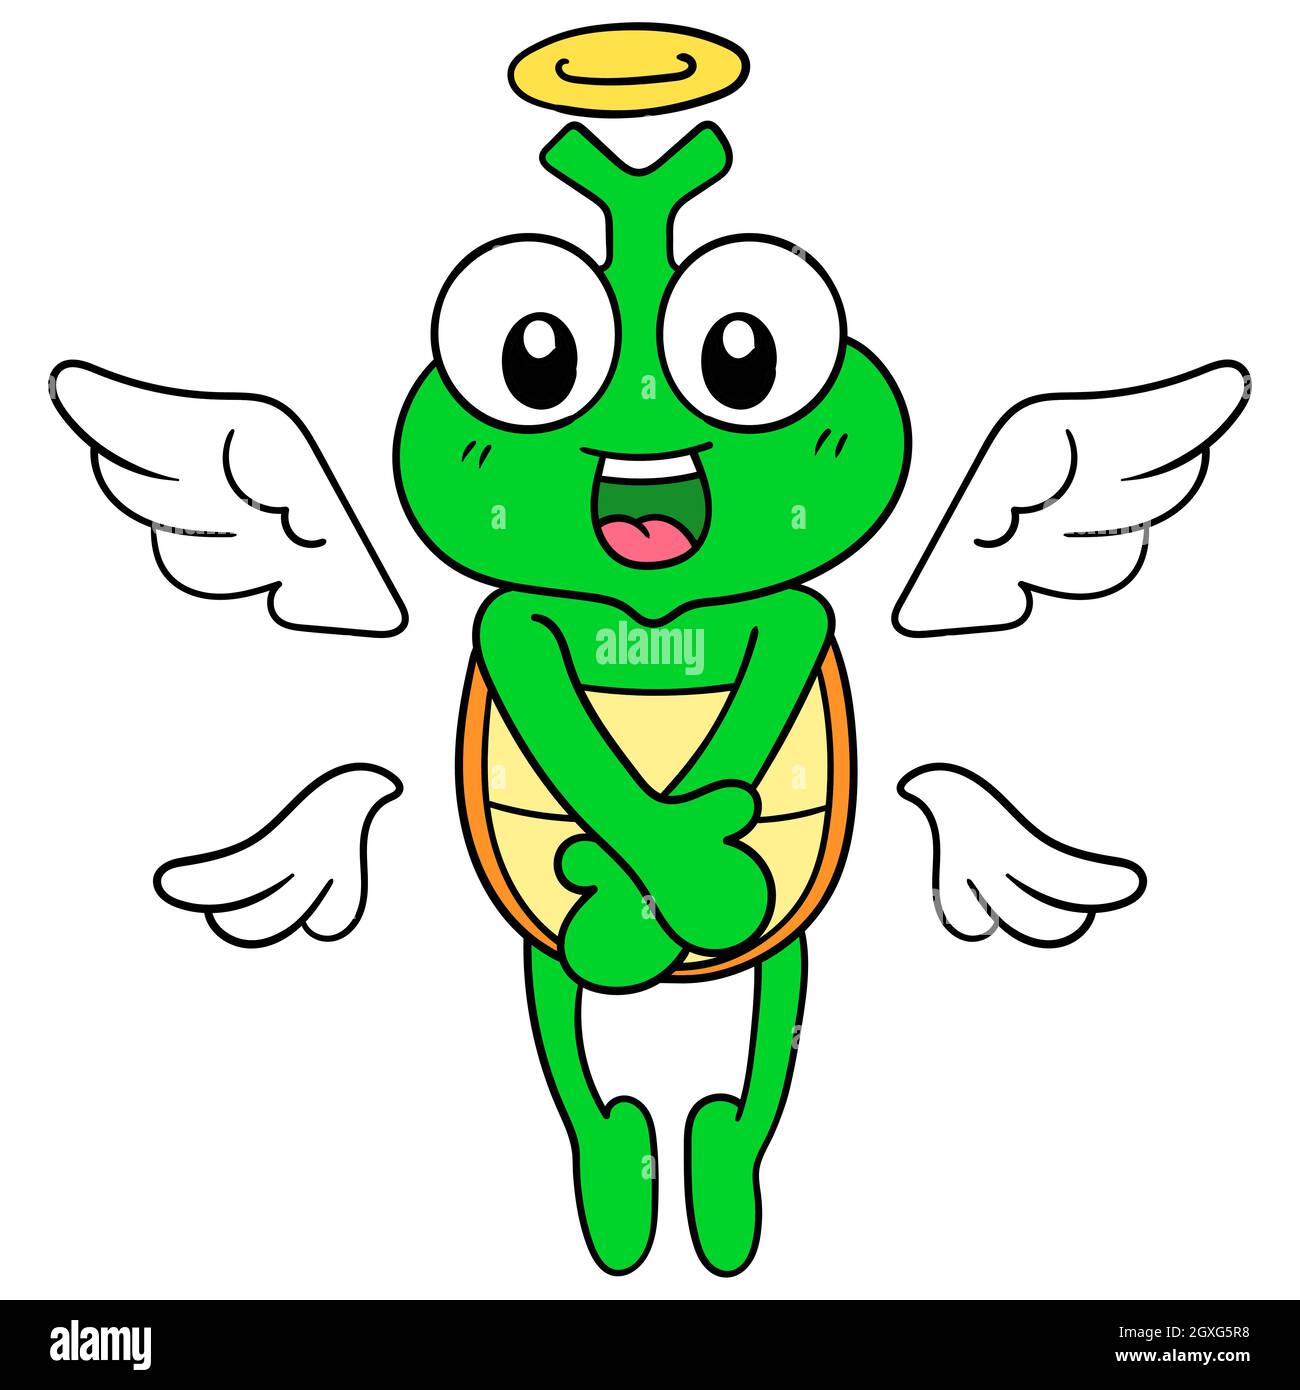 la tartaruga che era morta divenne un angelo che volava in cielo Illustrazione Vettoriale